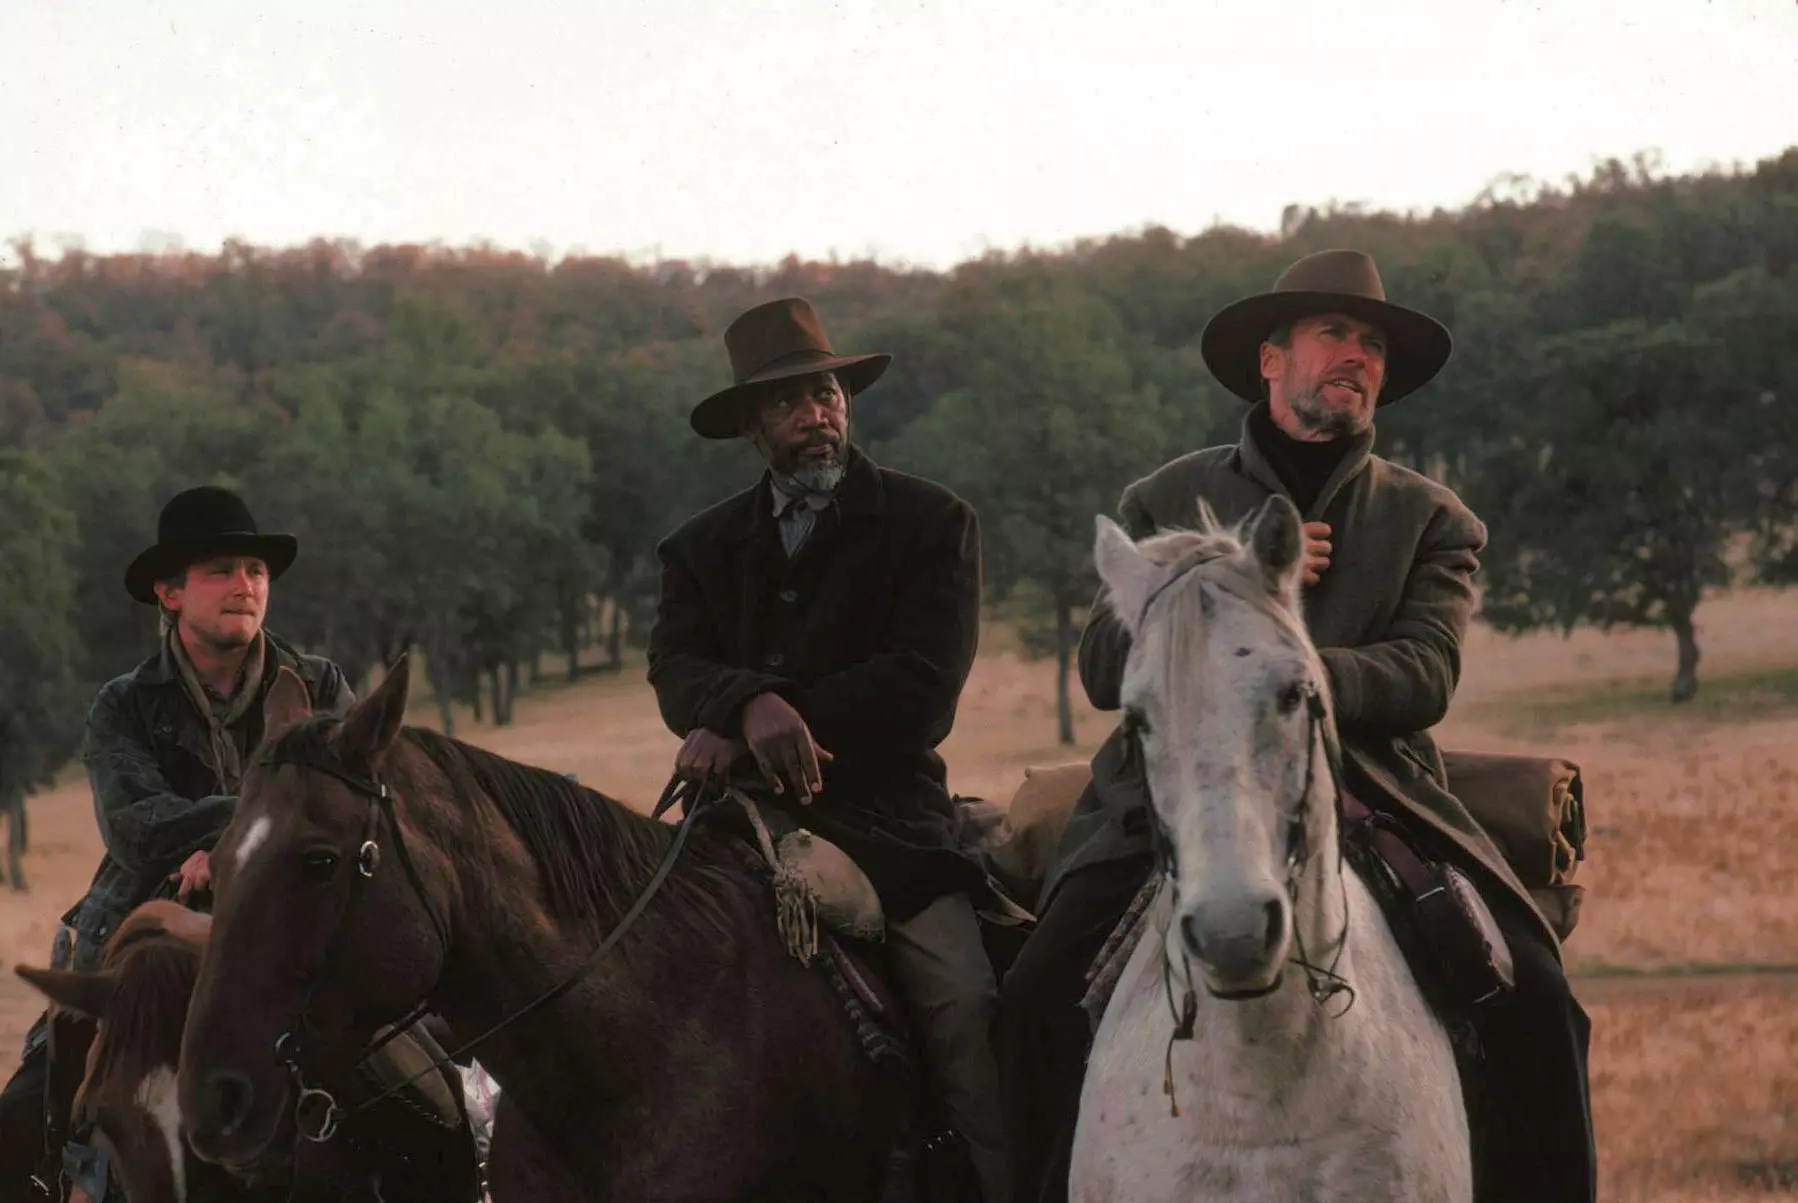 کلینت ایستوود و مورگان فریمن سوار بر اسب در نقش دو هفت تیر کش سابق در فیلم نابخشوده